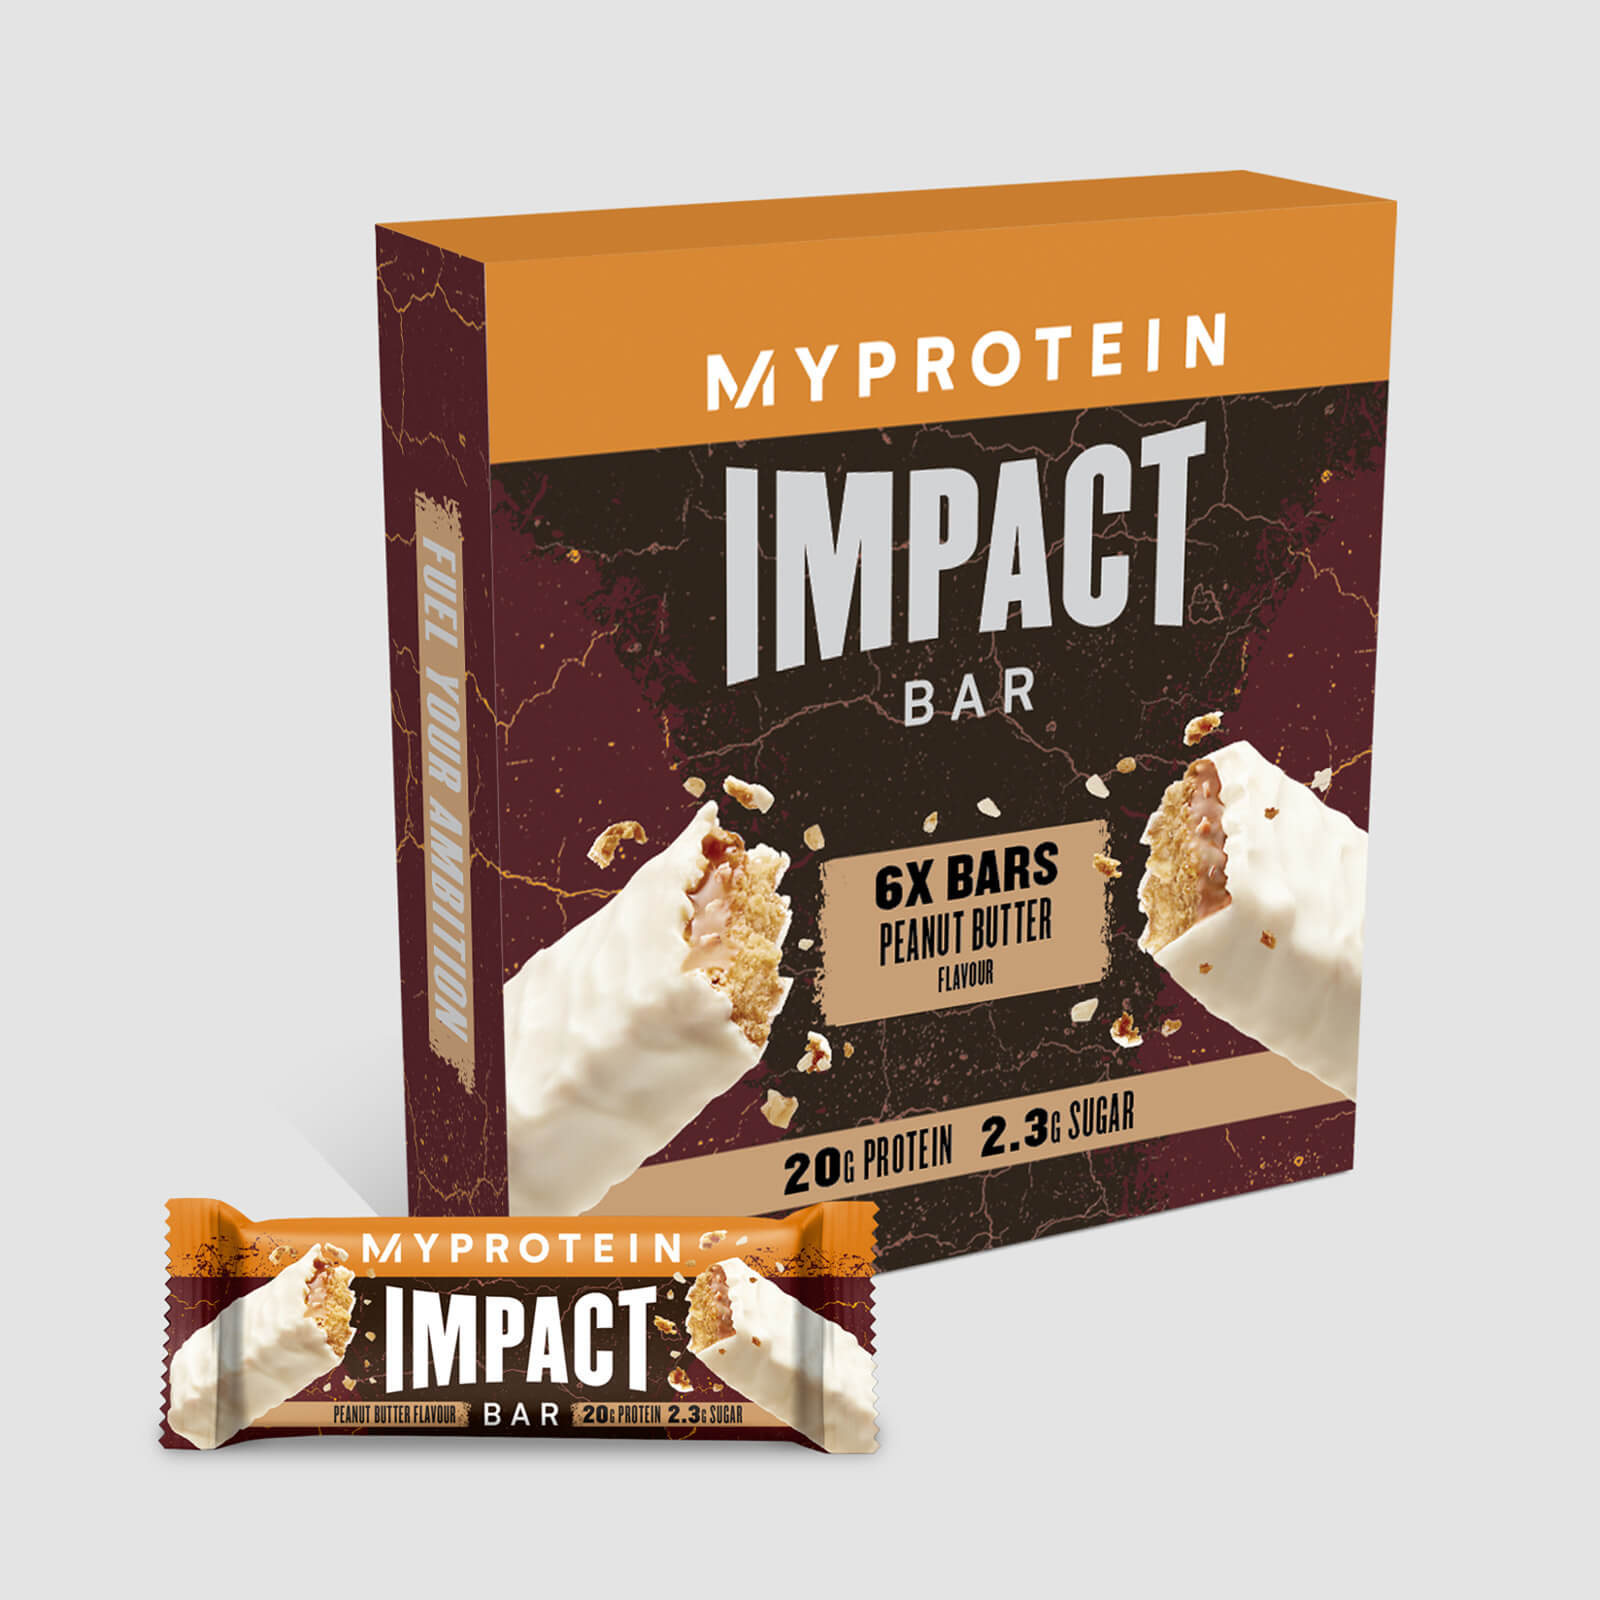 Myprotein Impact proteinbar - 6Bars - Peanøttsmør